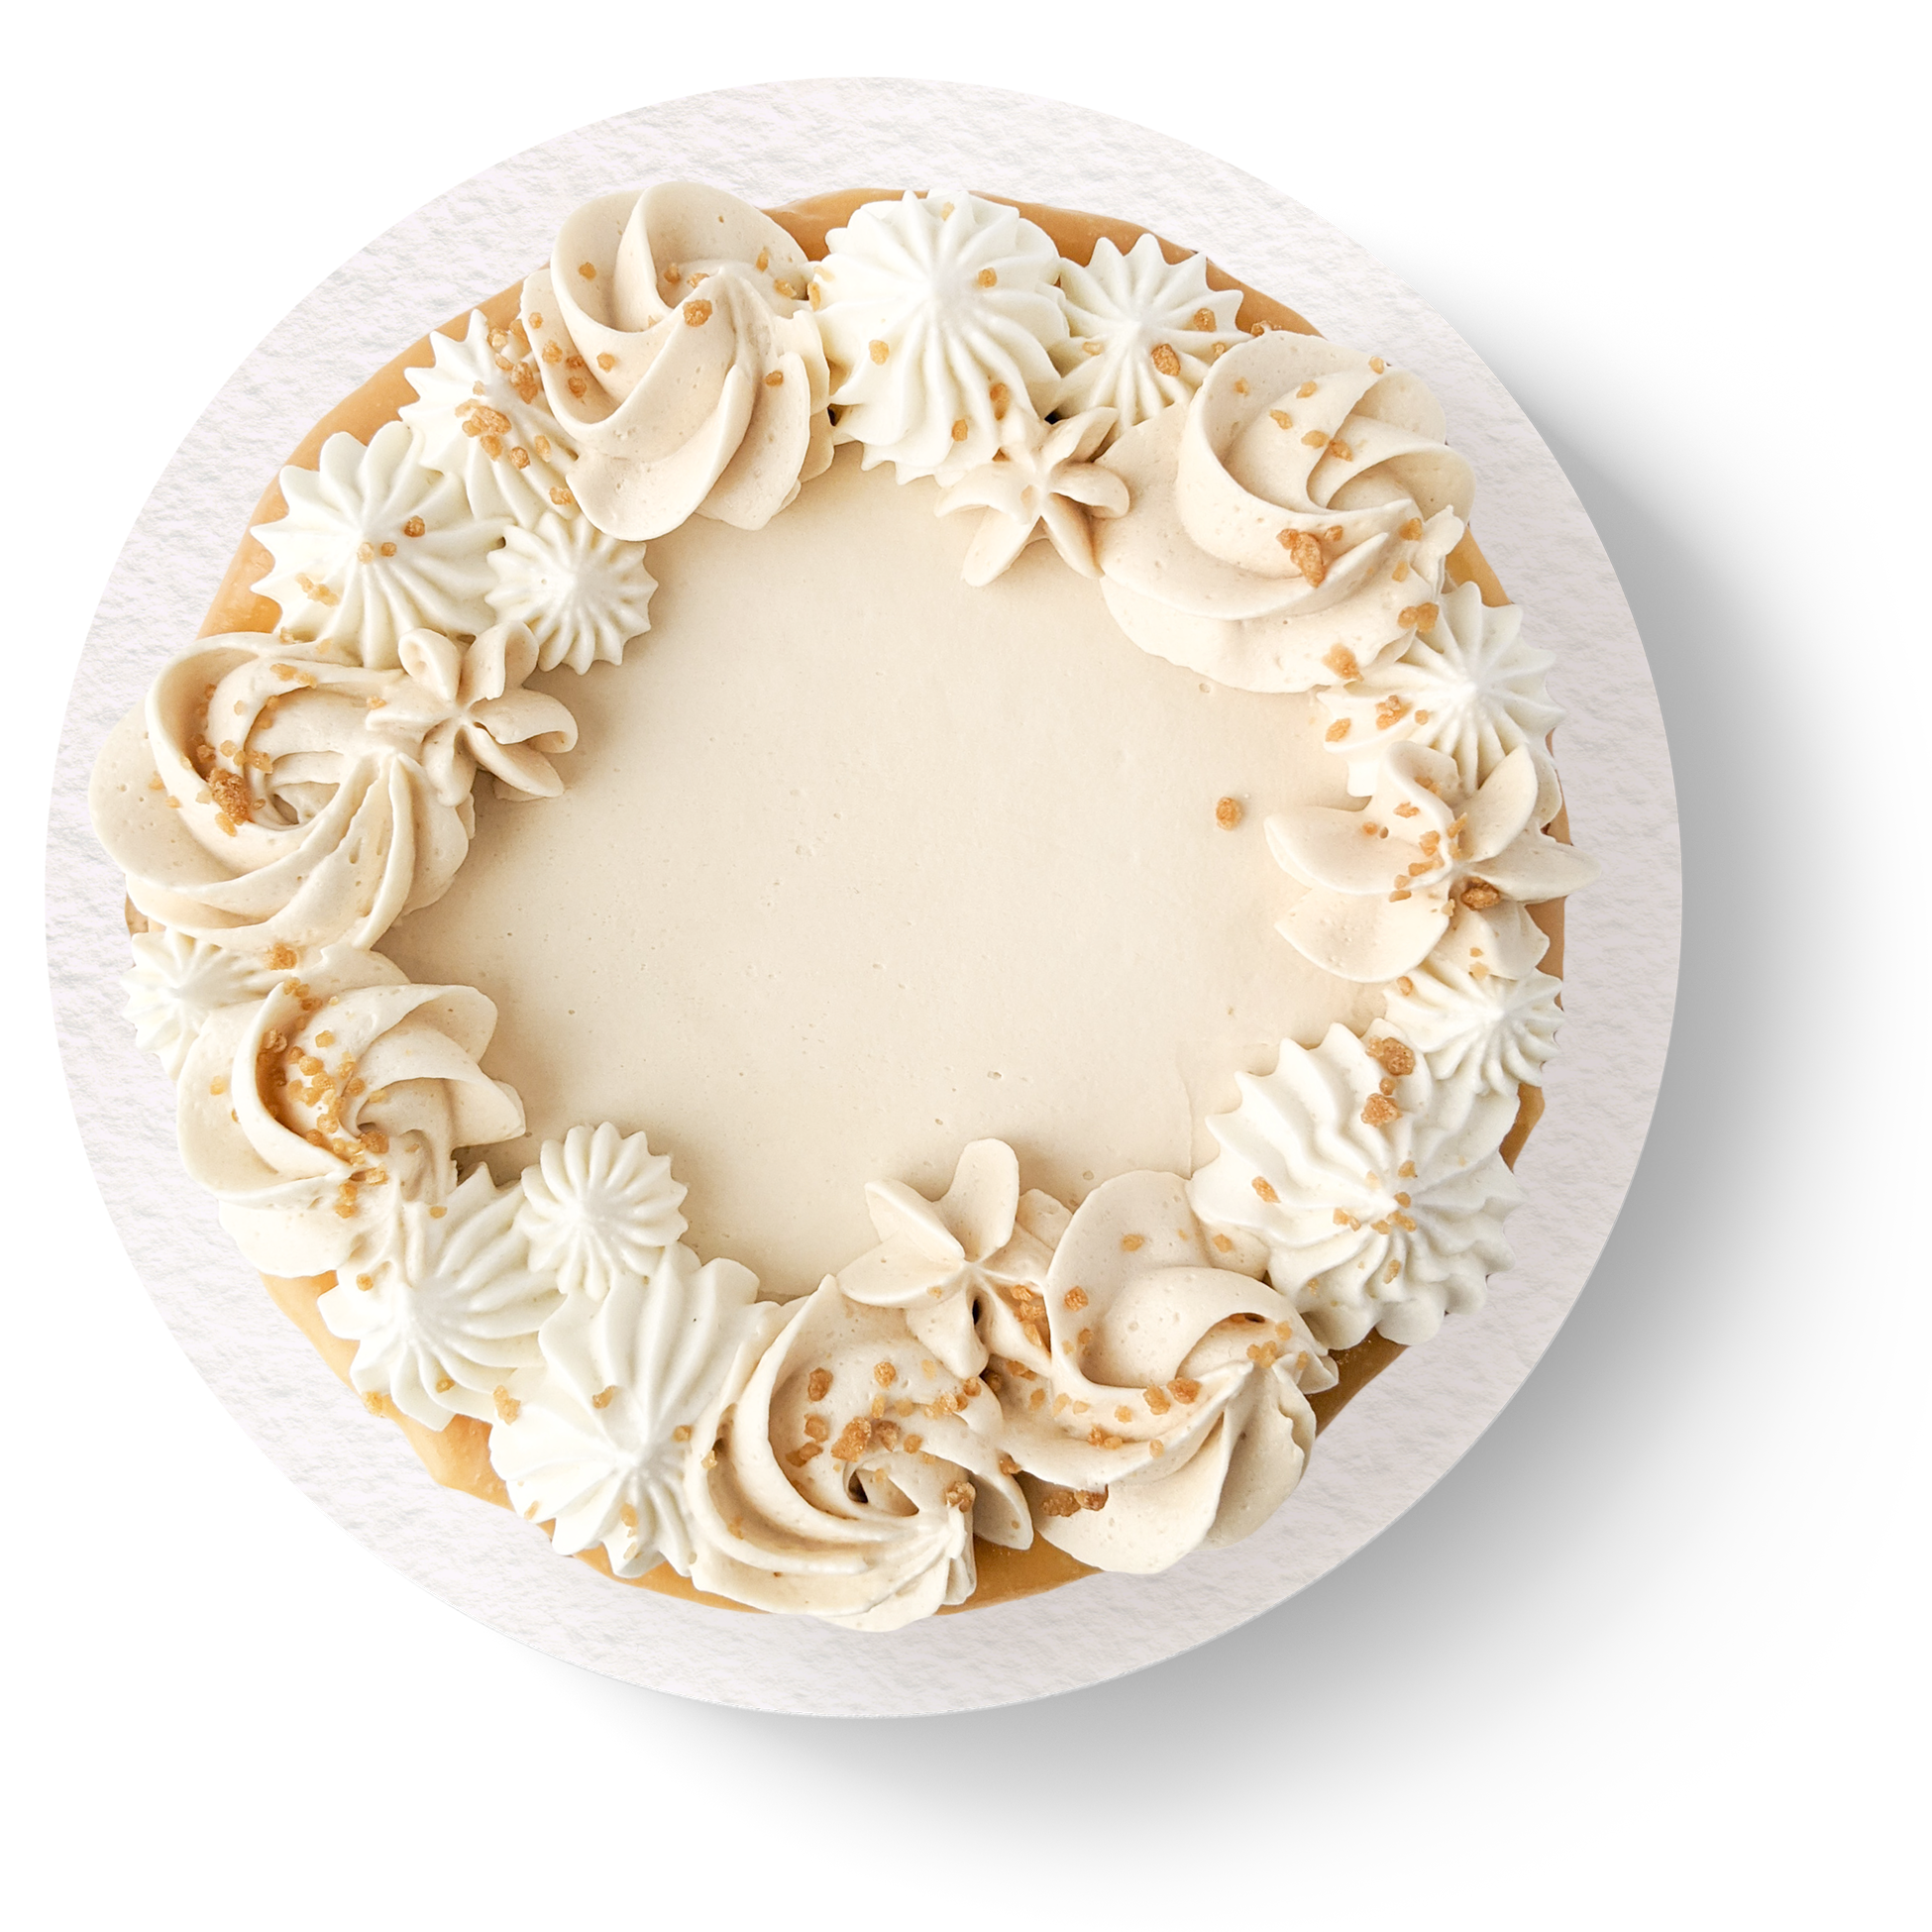 Gâteau érable végane et sans allergènes avec gâteau à la vanille et coulis au caramel vu de haut.